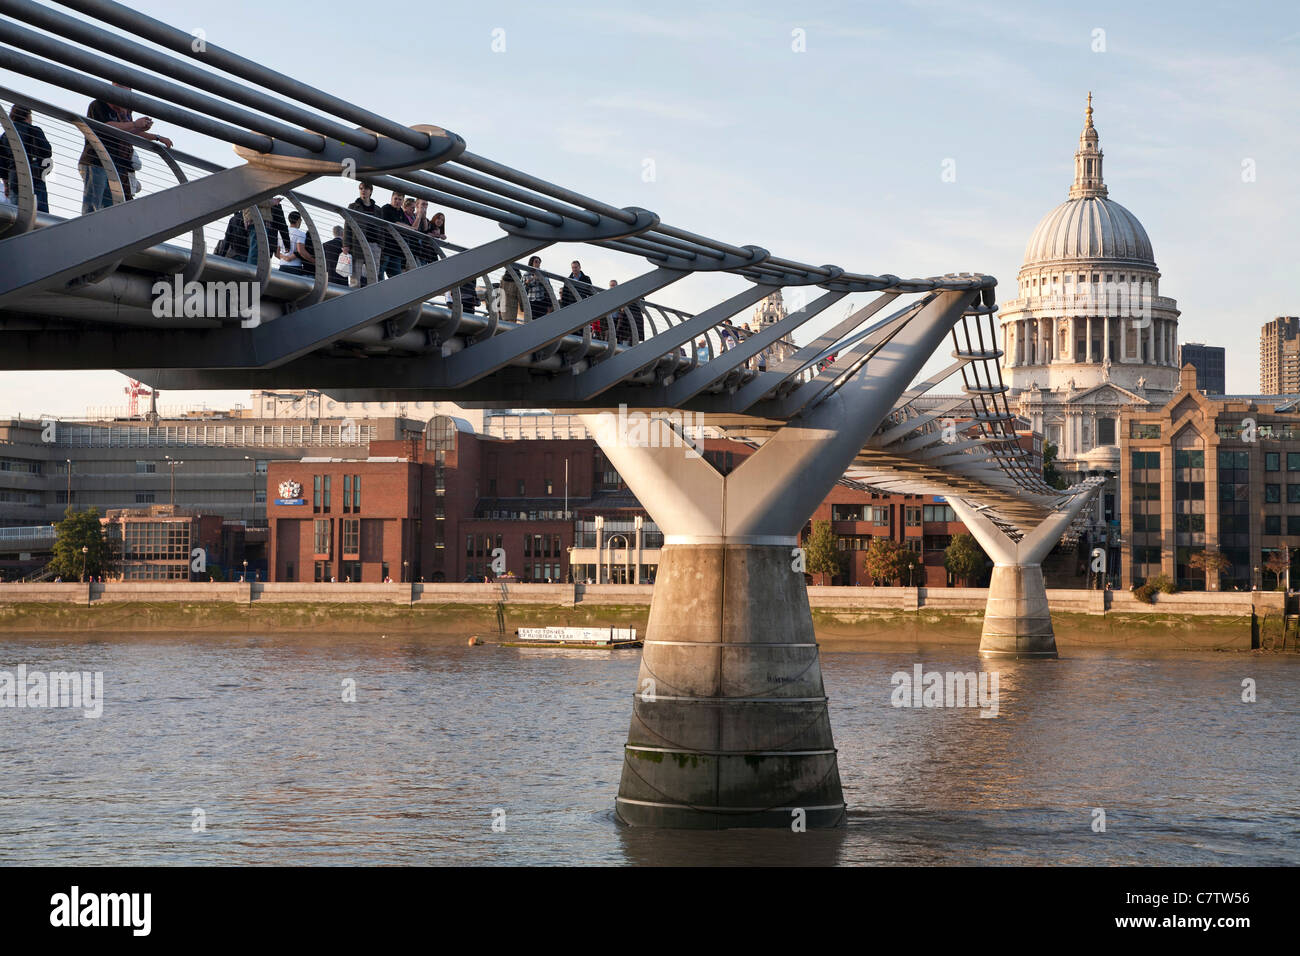 Pont pied du millénaire, London Millennium Footbridge et la Cathédrale St Paul de Londres. Banque D'Images